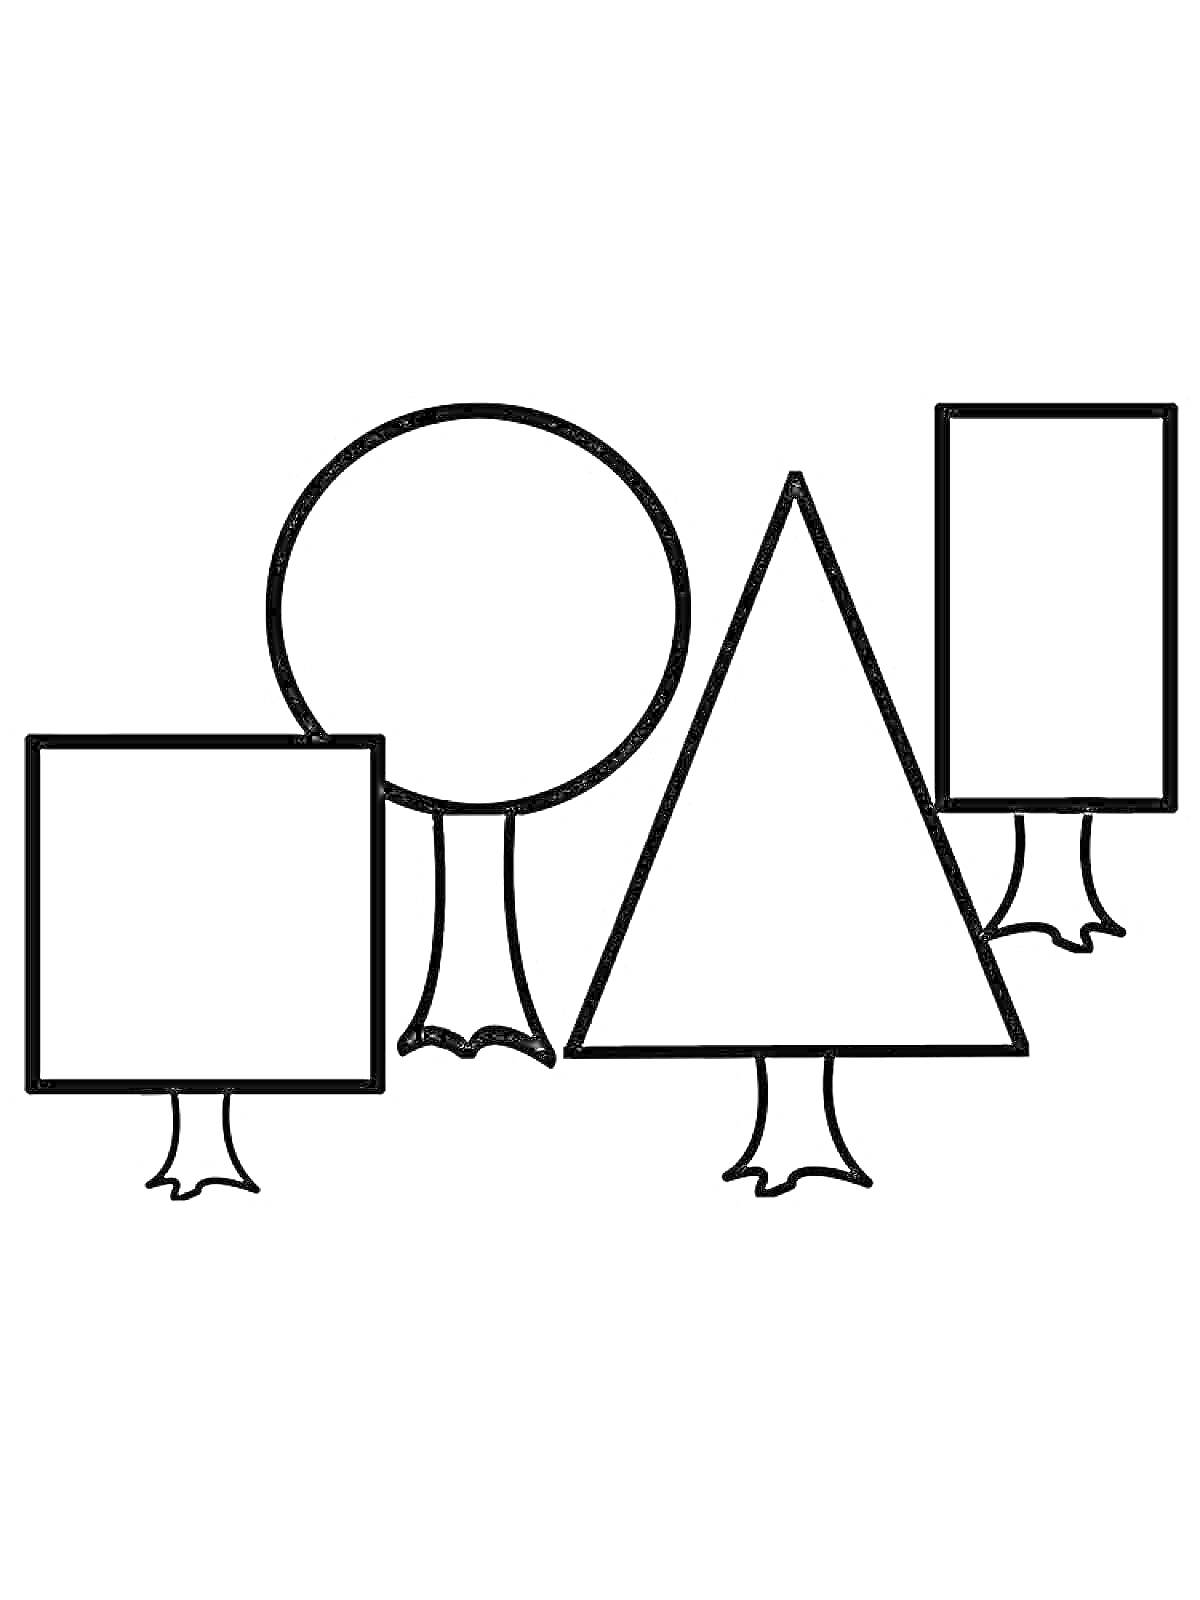 Раскраска Деревья из геометрических фигур (квадрат, круг, треугольник, прямоугольник)